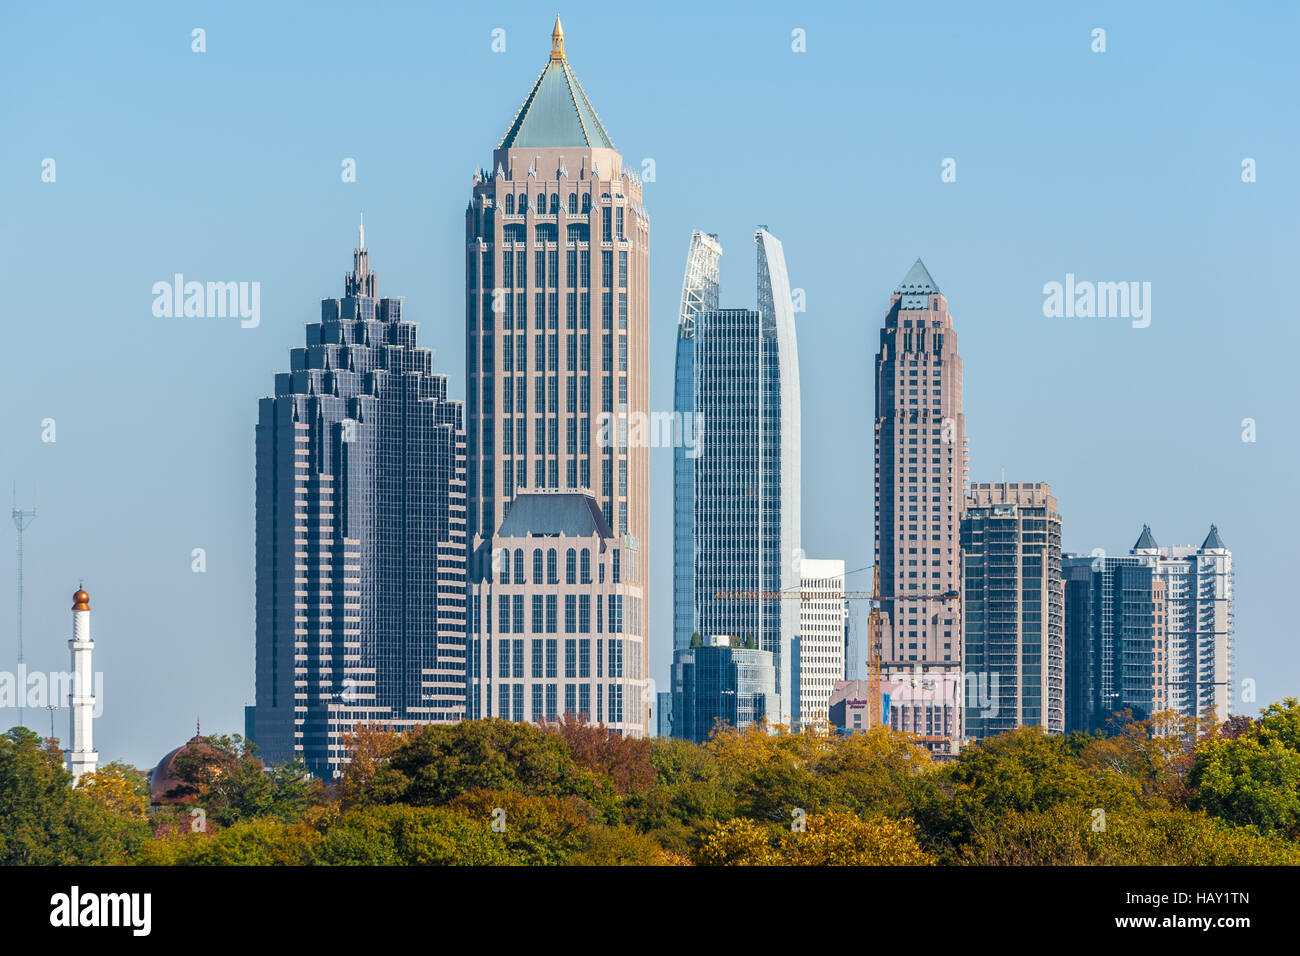 Midtown Atlanta, Georgia mit gewerblich genutzten Gebäuden und Minarett Turm der islamischen Moschee Masjid Al-Farooq Skyline. Stockfoto